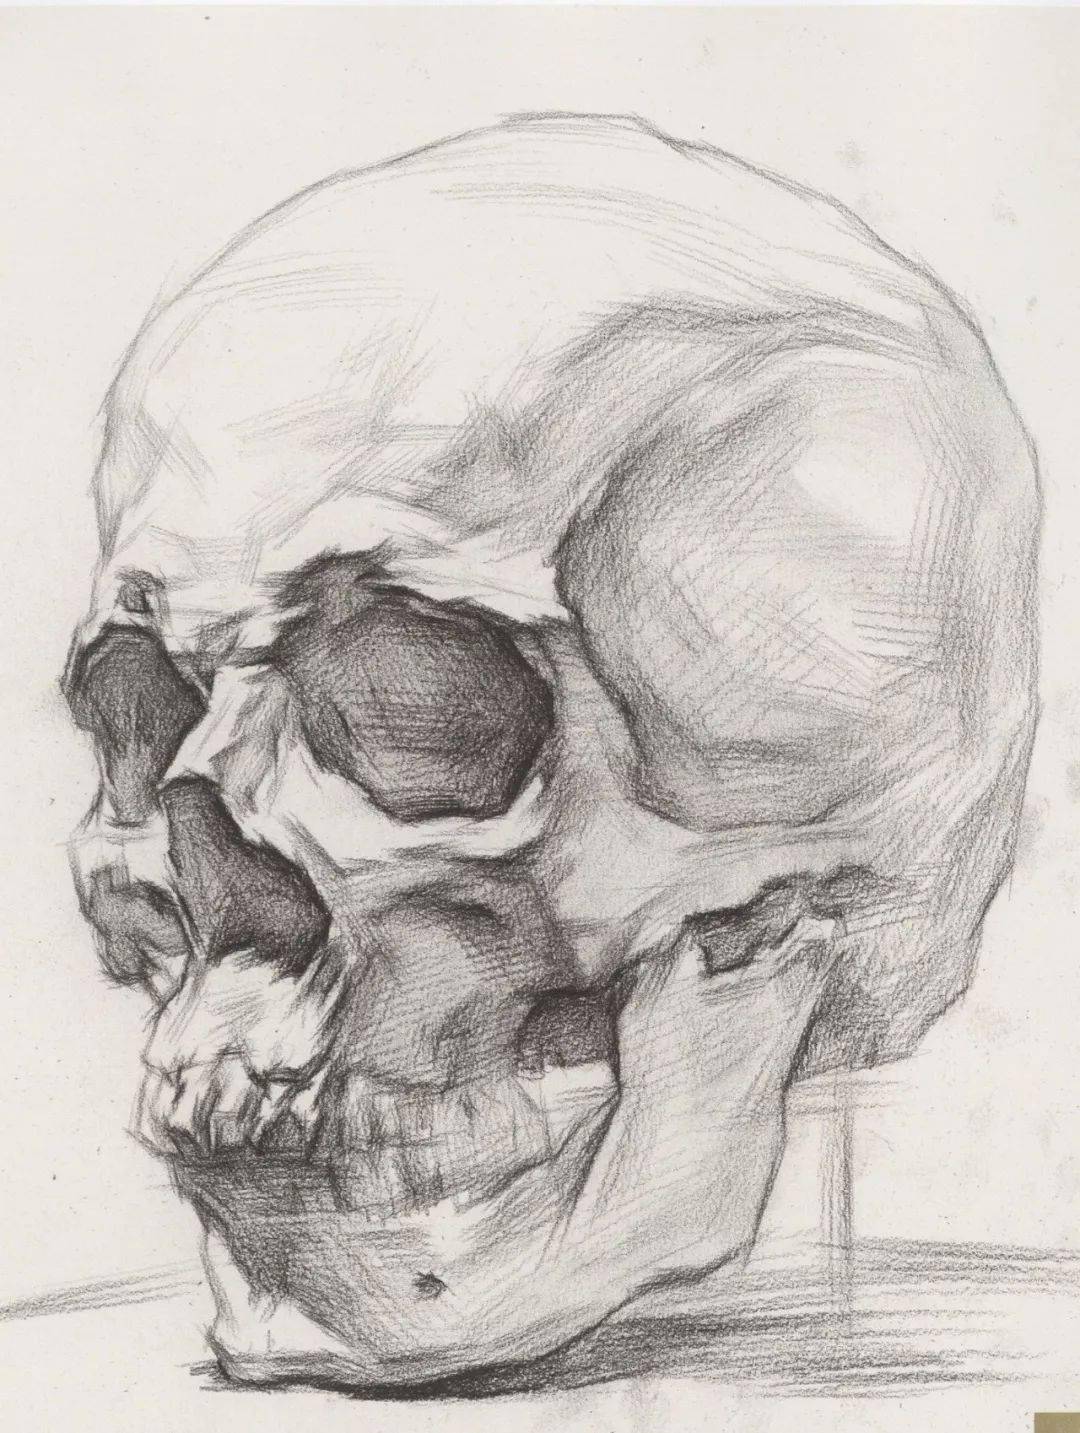 超强干货丨从结构学习素描头骨的刻画细节